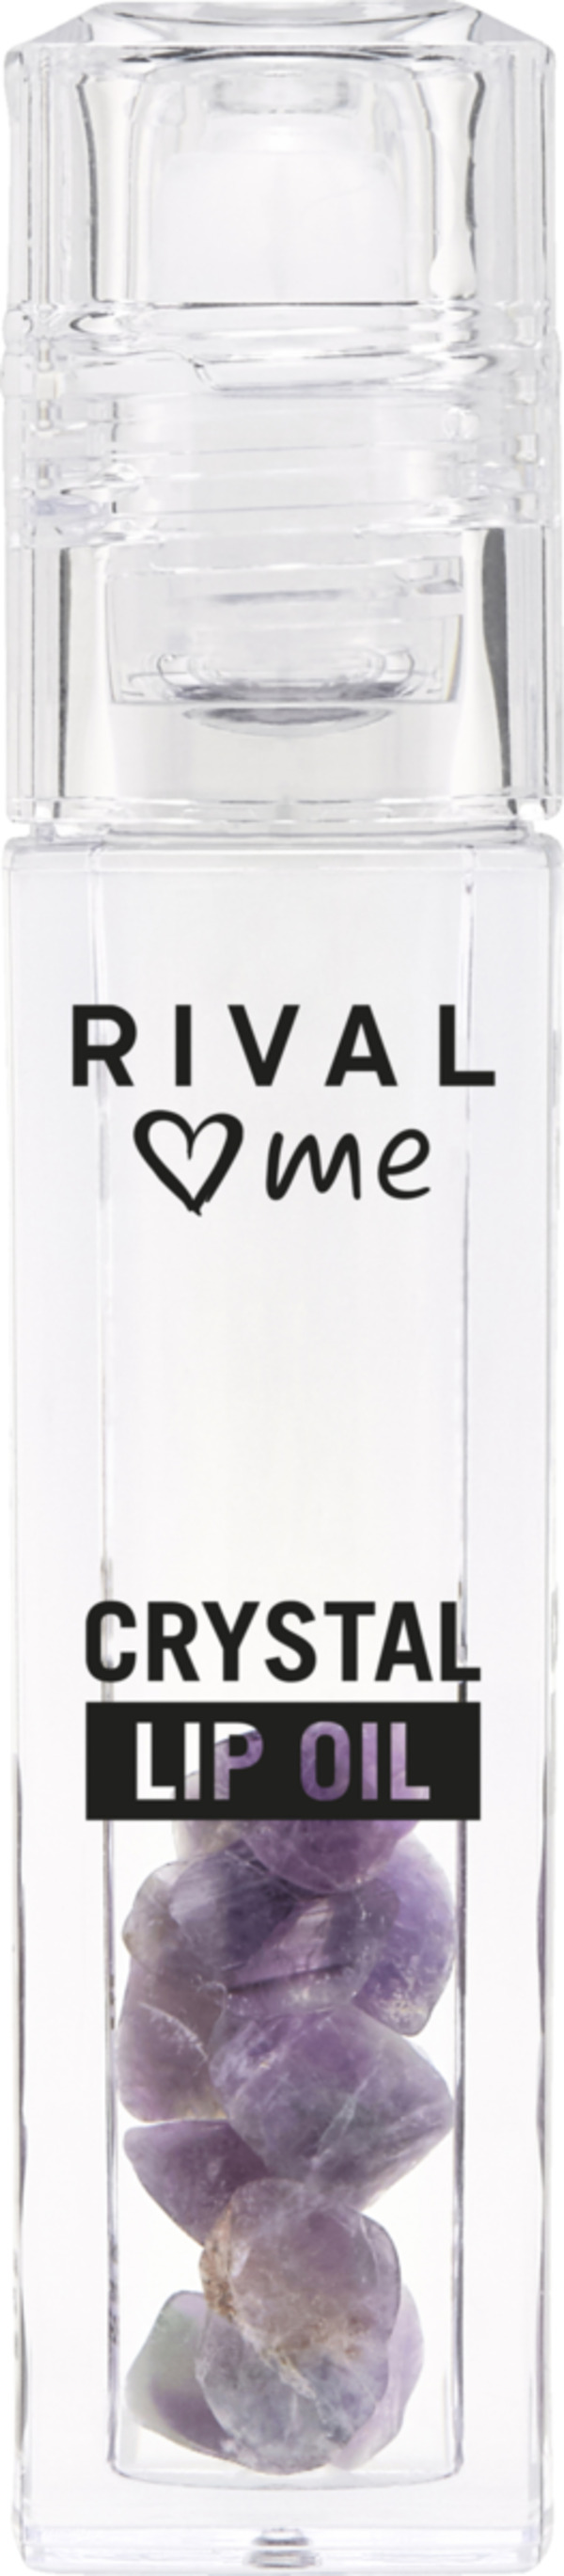 Bild 1 von RIVAL loves me Crystal Lip Oil 01 amethyst